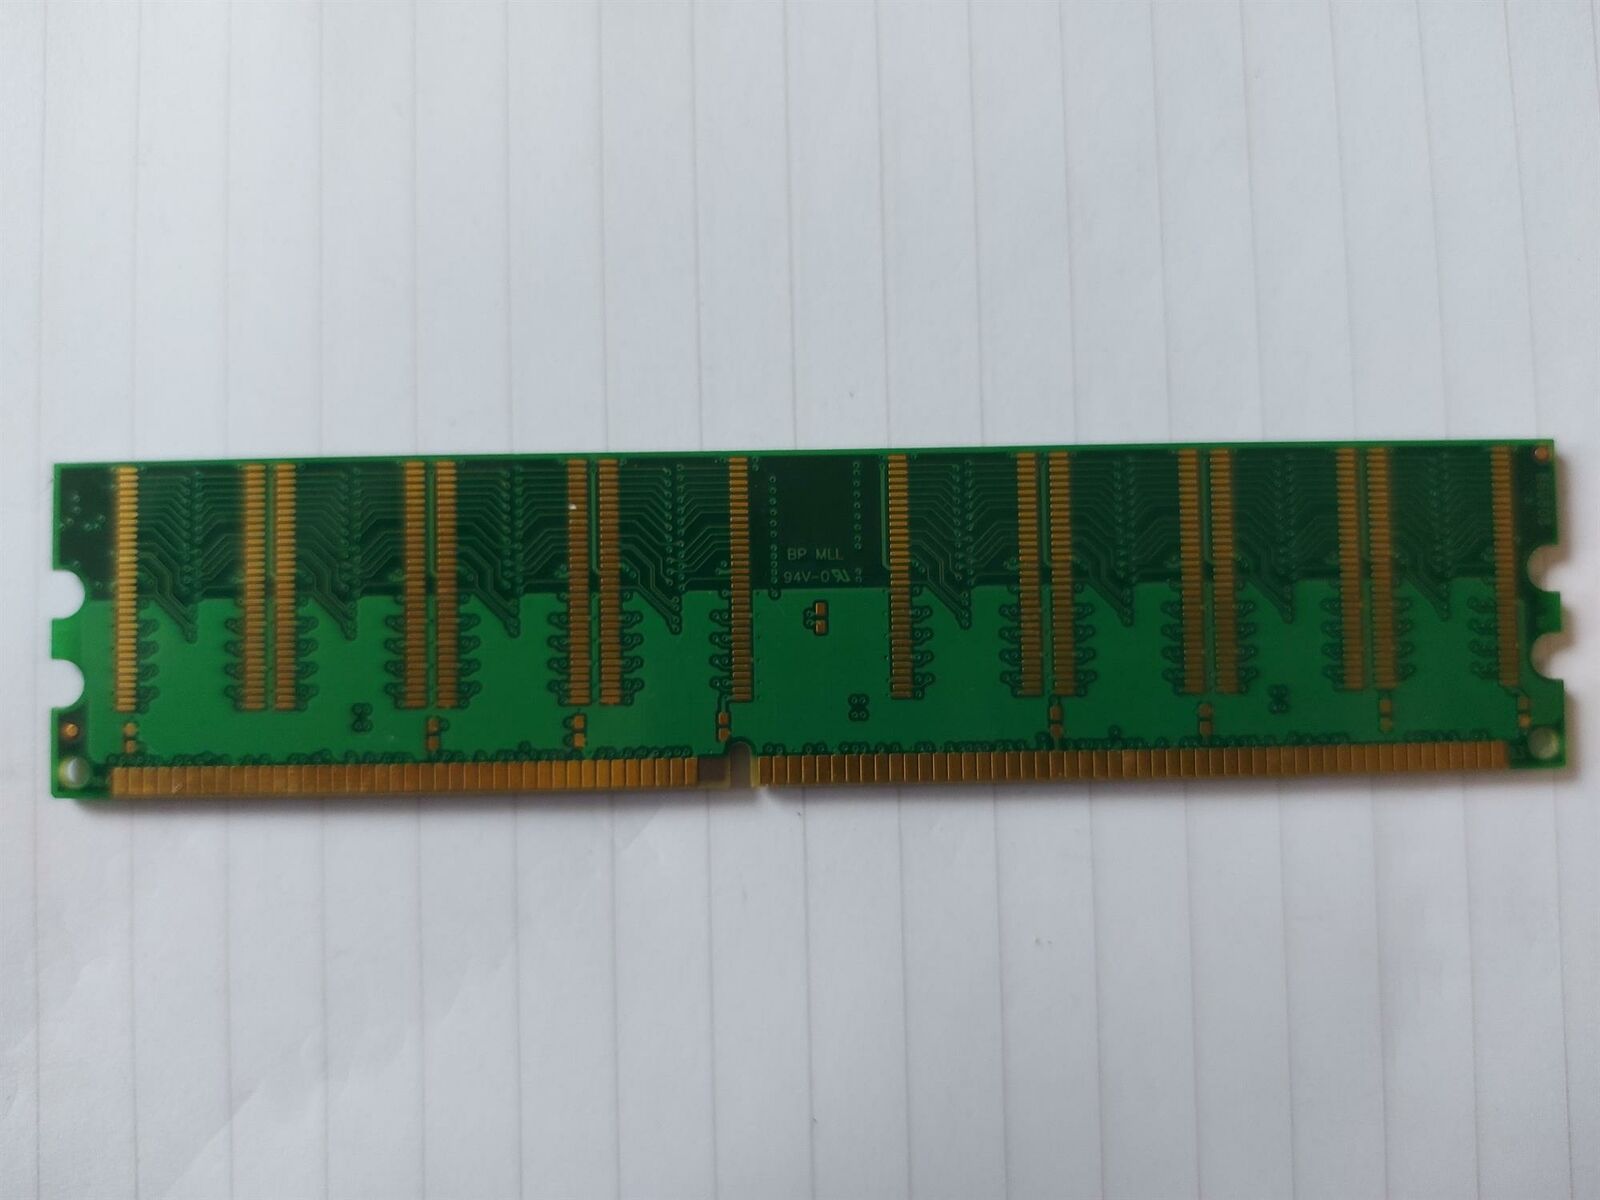 Micron 256MB 184 Pin PC3200 CL3 DDR Non ECC